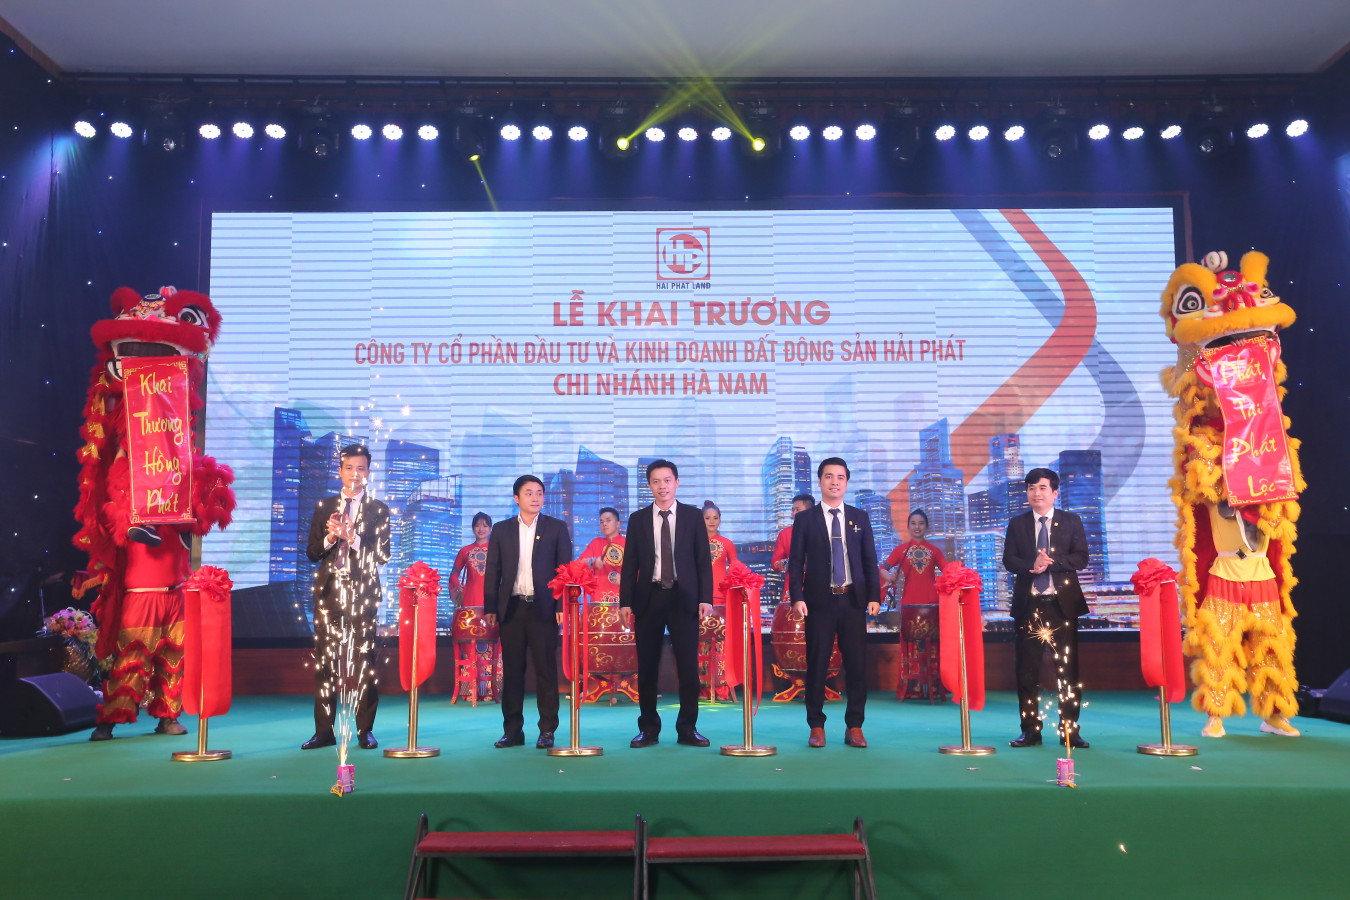 Hải Phát Land khai trương Chi nhánh Hà Nam và mở bán lớn dự án River Silk City